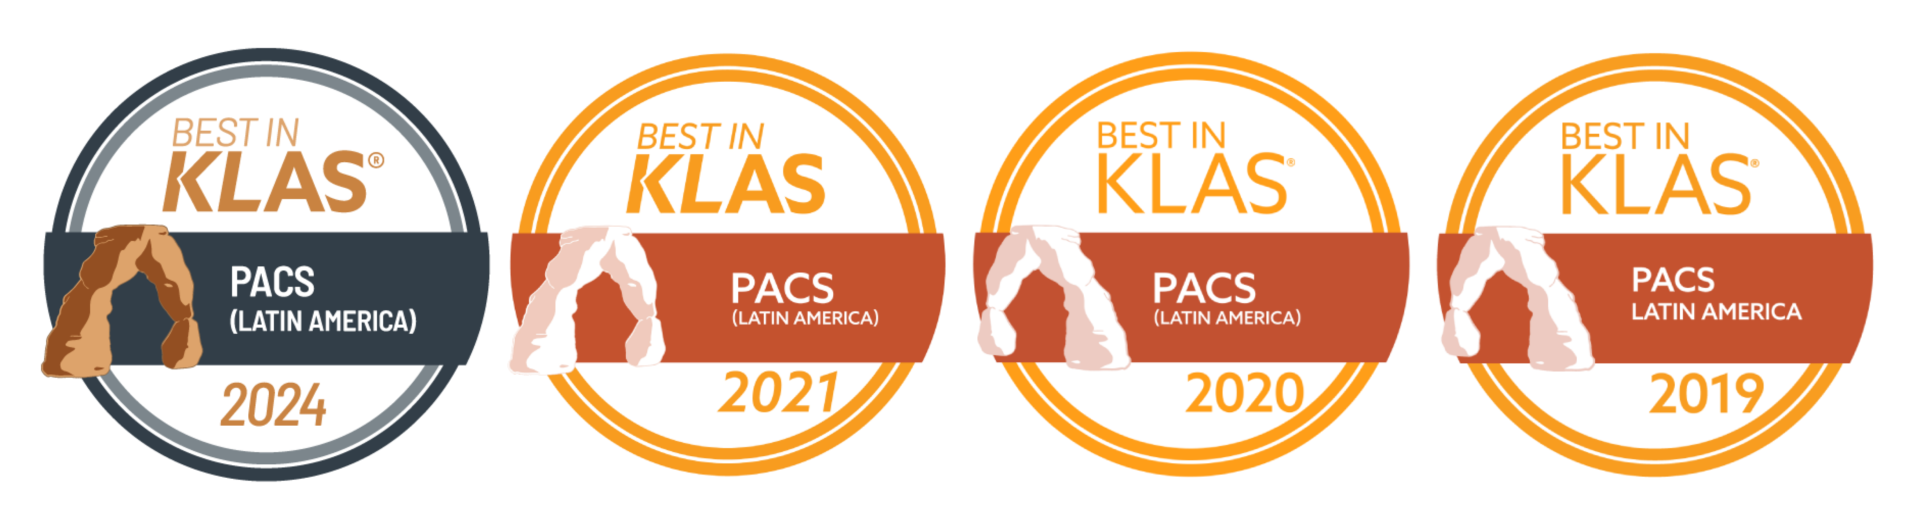 Pixeon é reconhecida pelo Best in KLAS for Latin America pela quarta vez